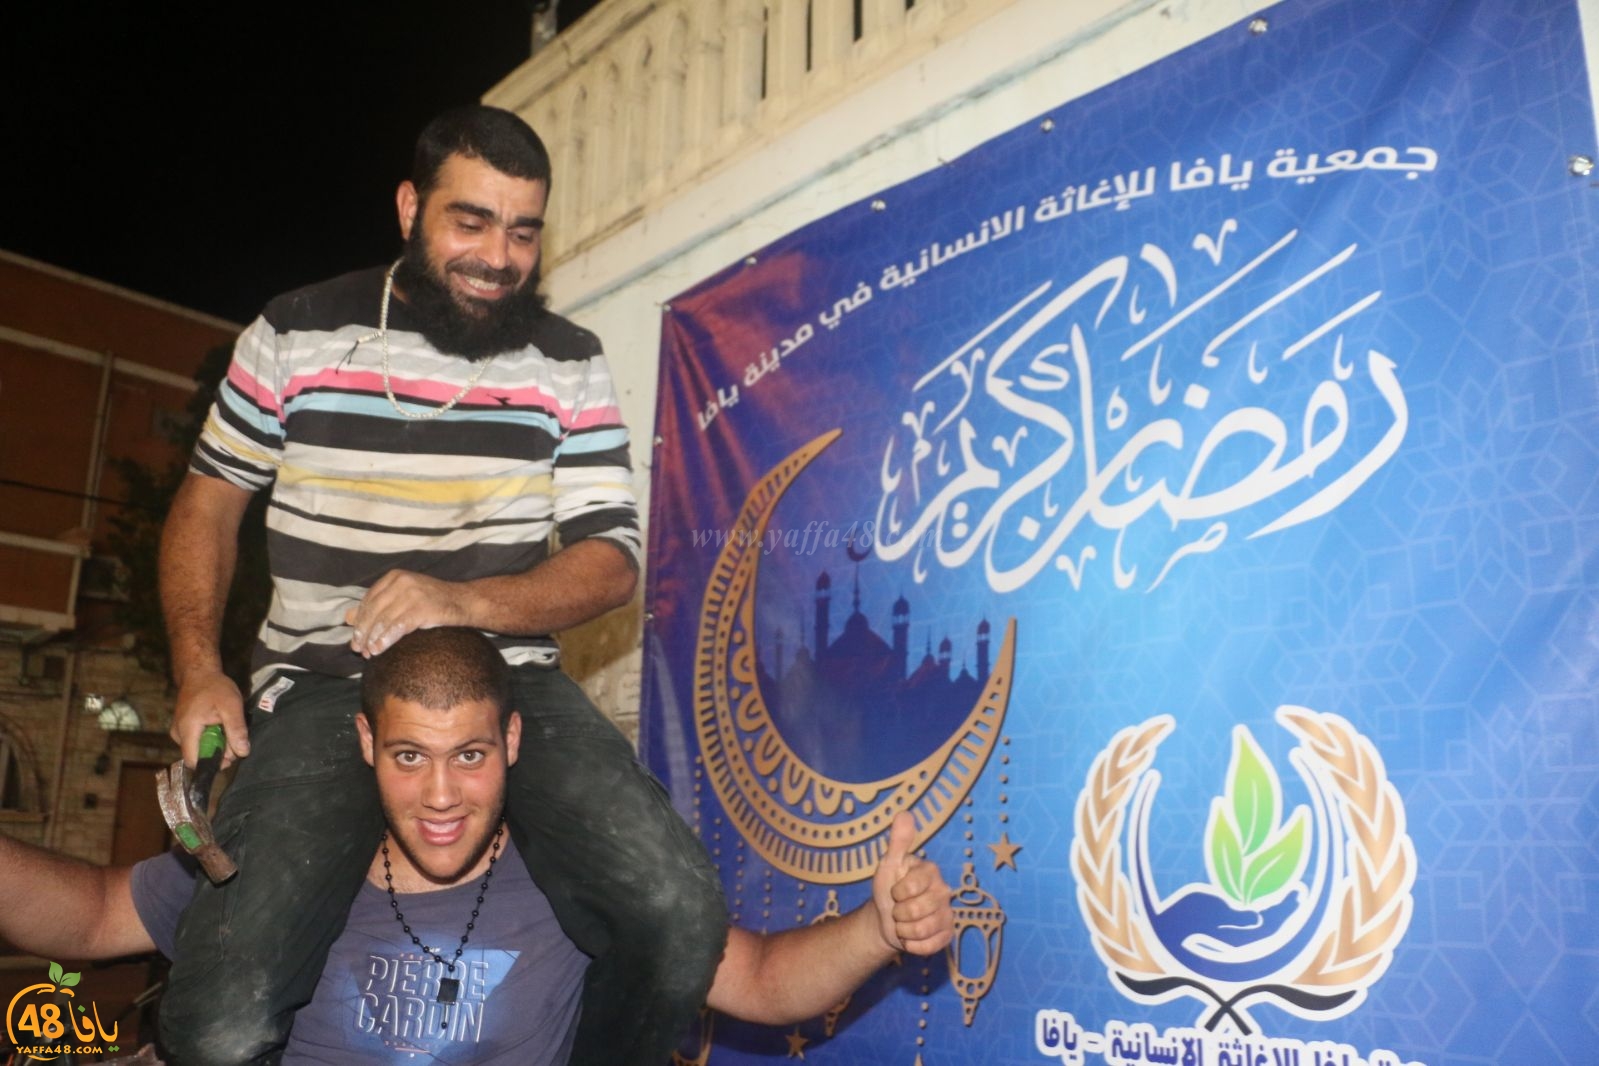  بالصور: جمعية يافا تُهنئ المسلمين في المدينة بحلول شهر رمضان المبارك